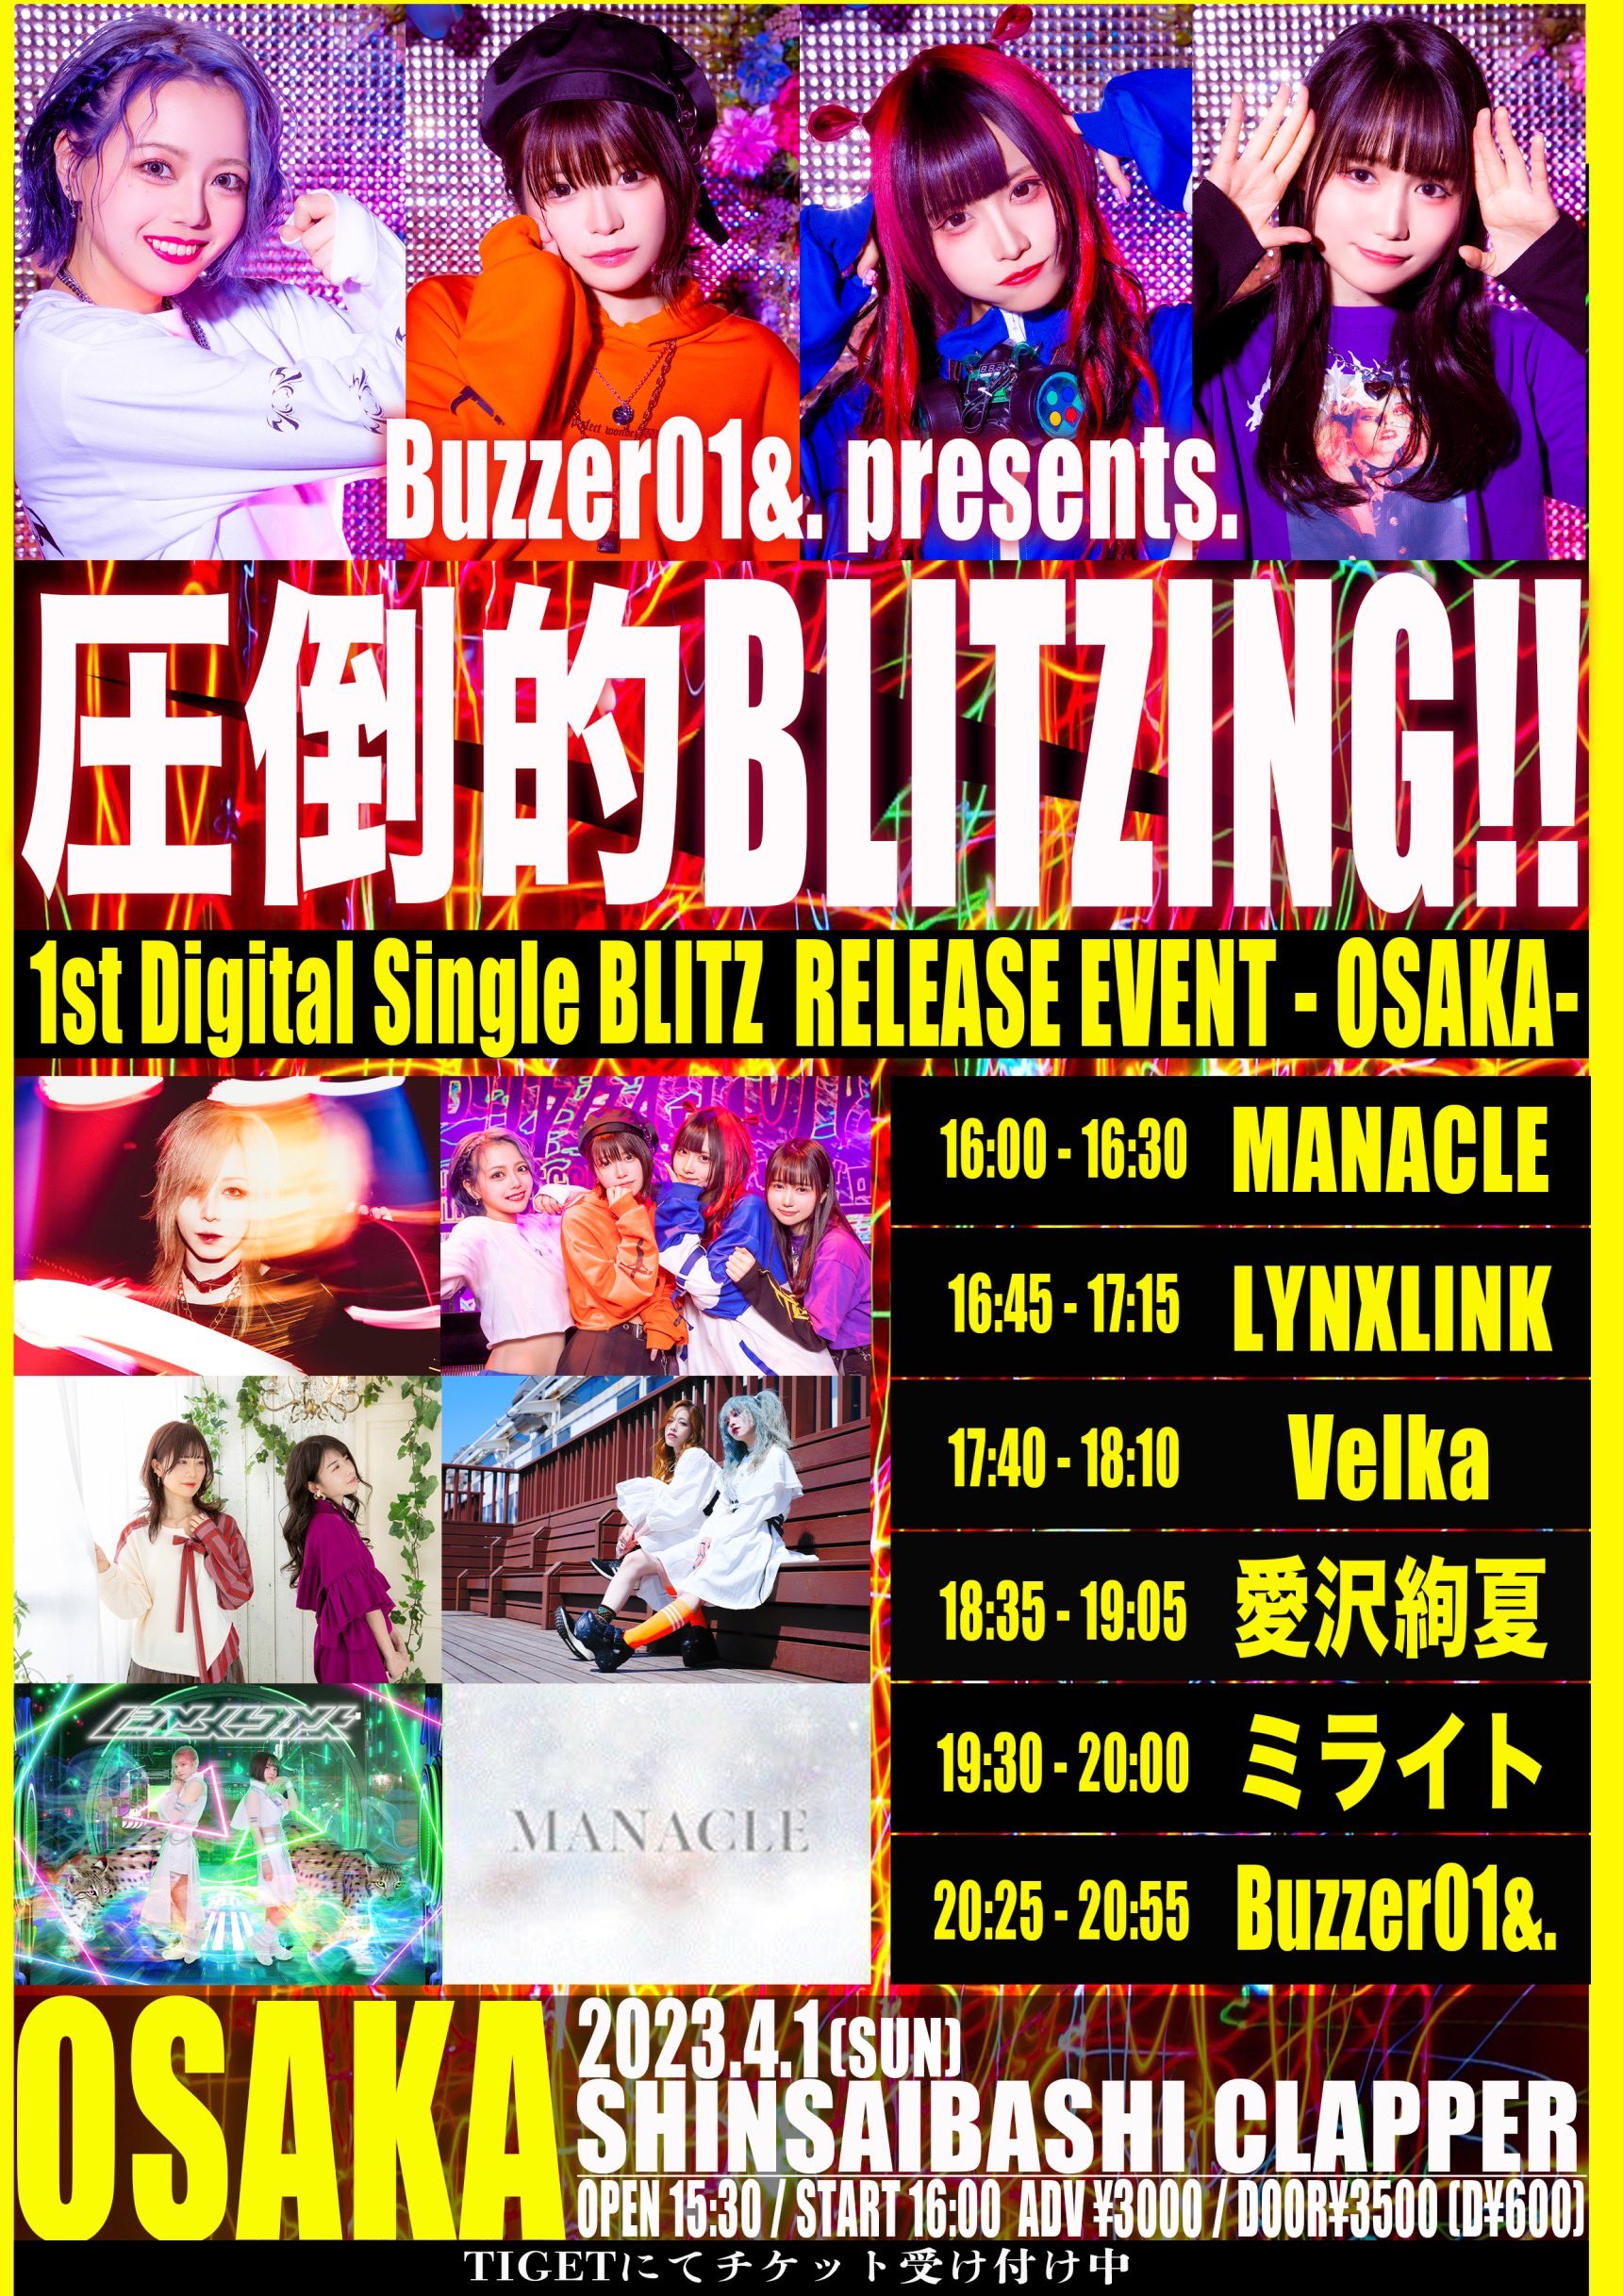 星井あおサポート出演公演(Buzzer01&.)Buzzer01&. presents. 【圧倒的BLITZING!! -OSAKA-】